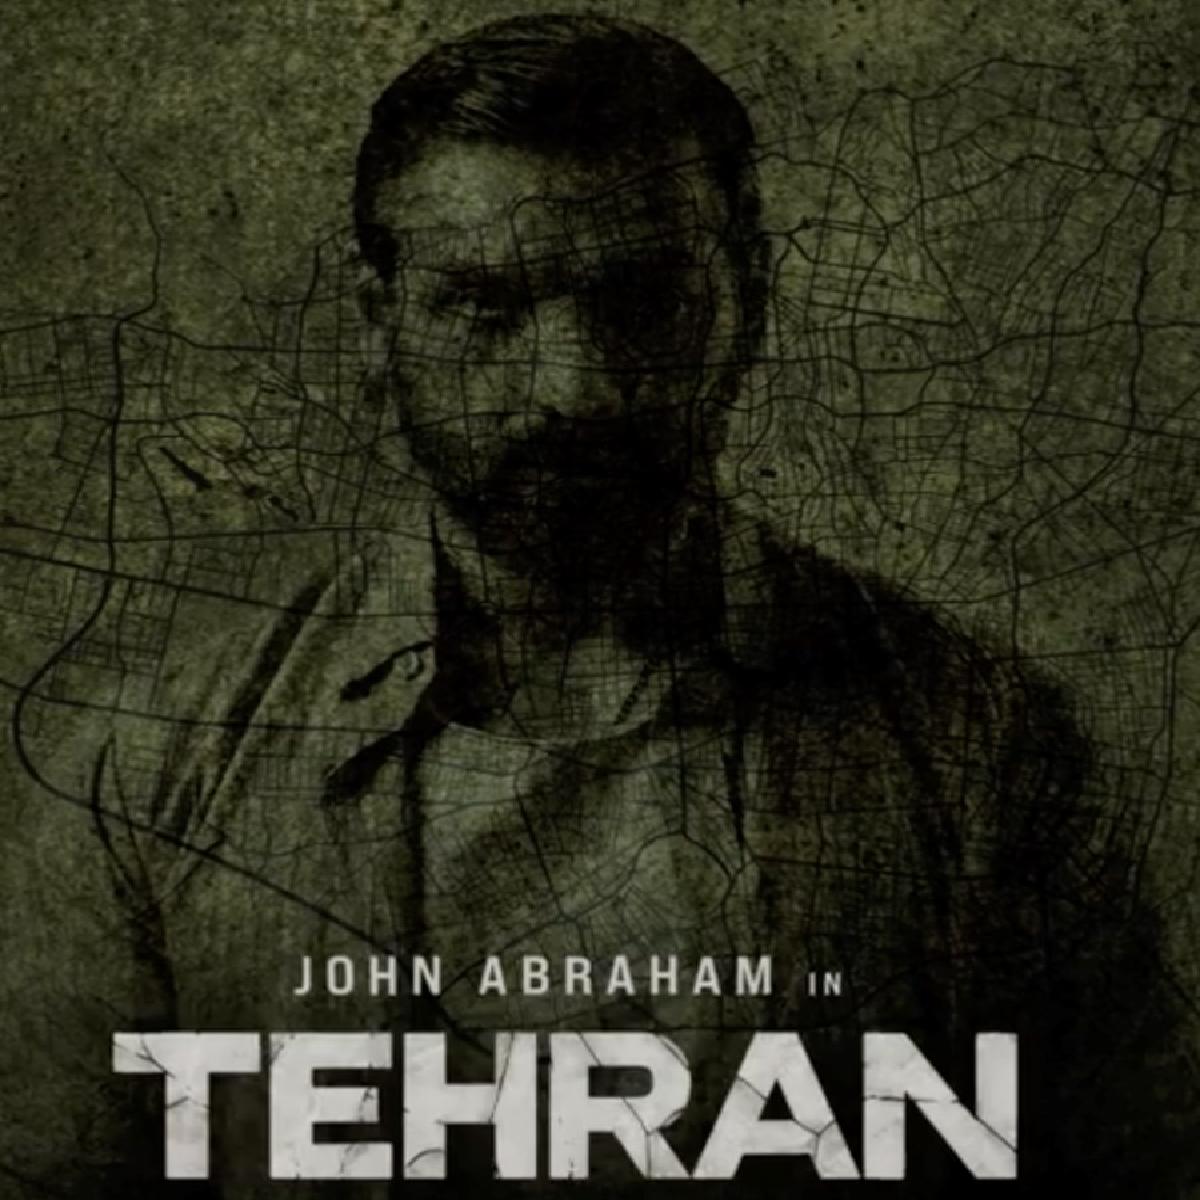 तेहरान की शूटिंग शुरू, जॉन अब्राहम का फर्स्ट लुक सामने आया